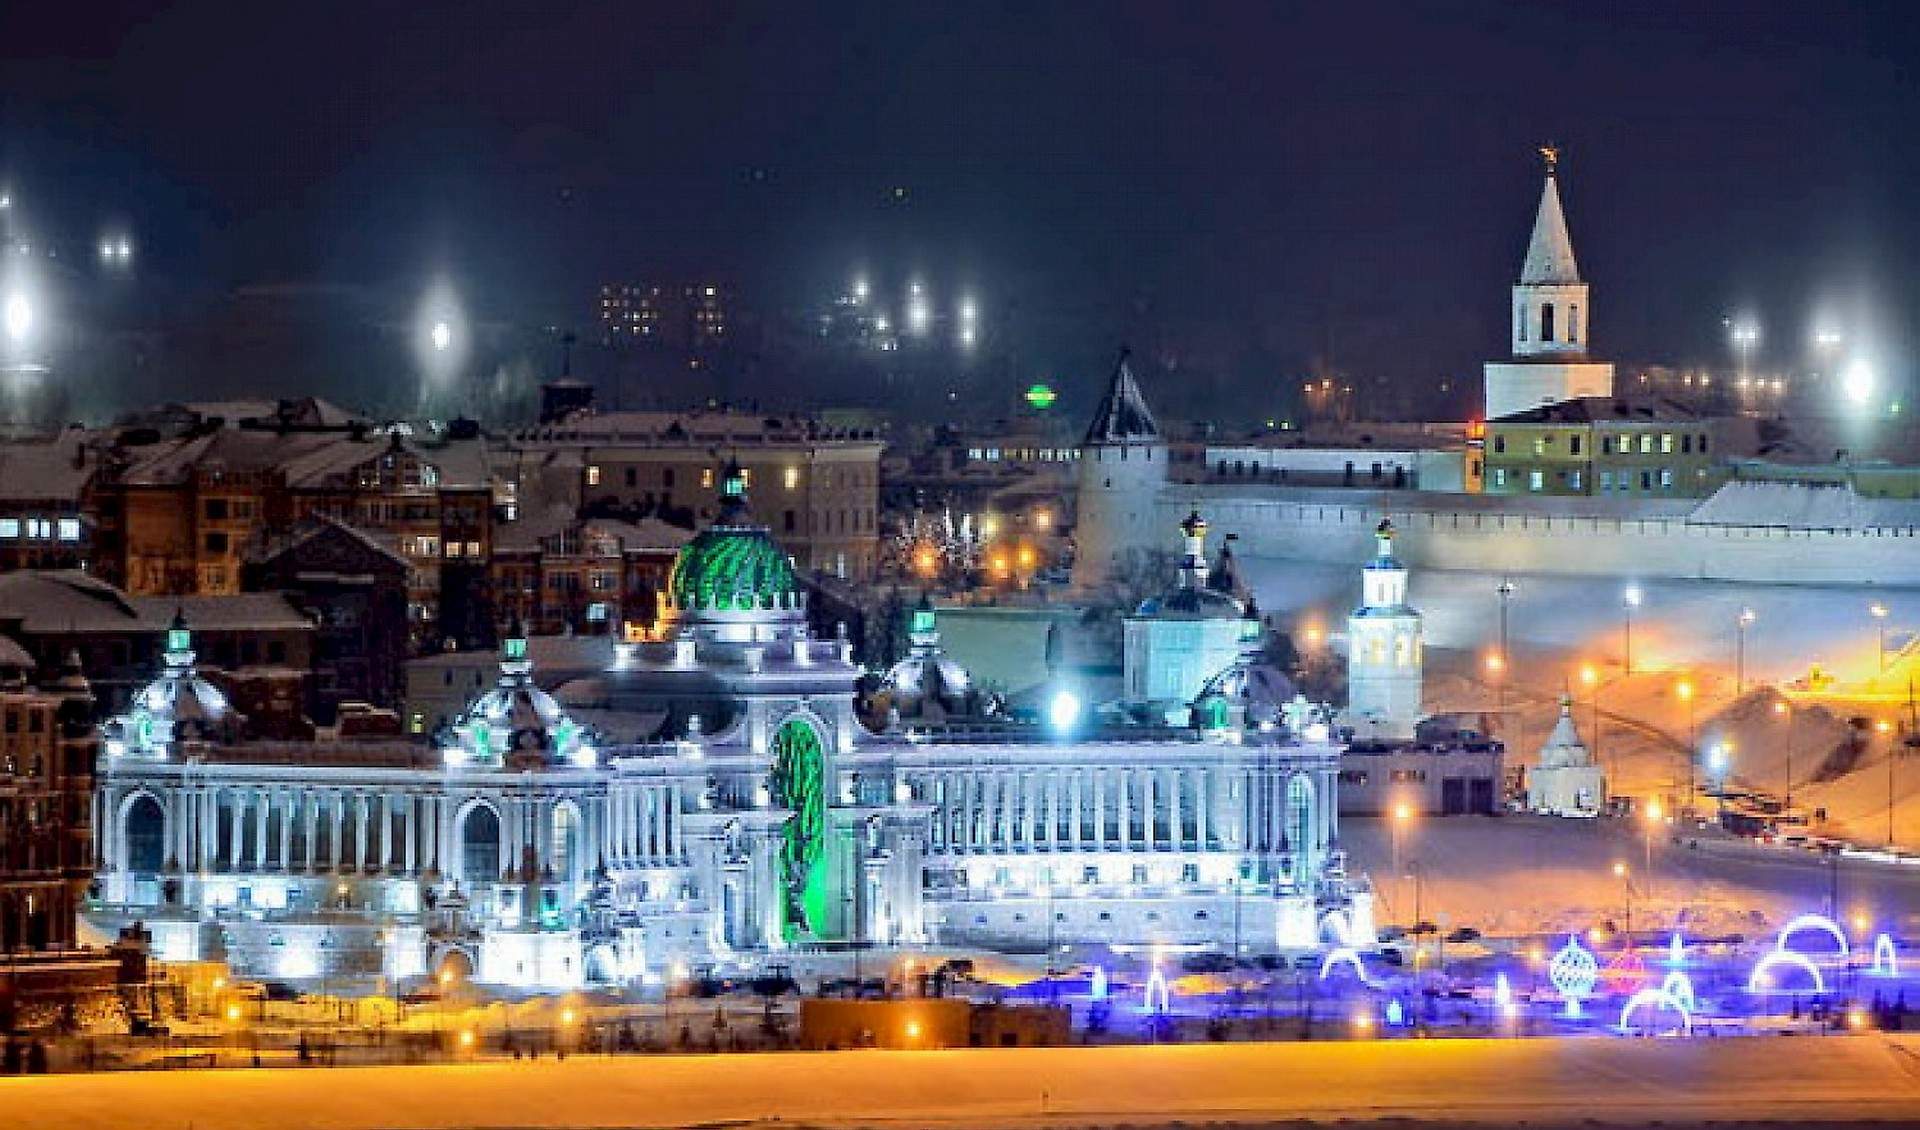 Казань в январе: город в белом цвете